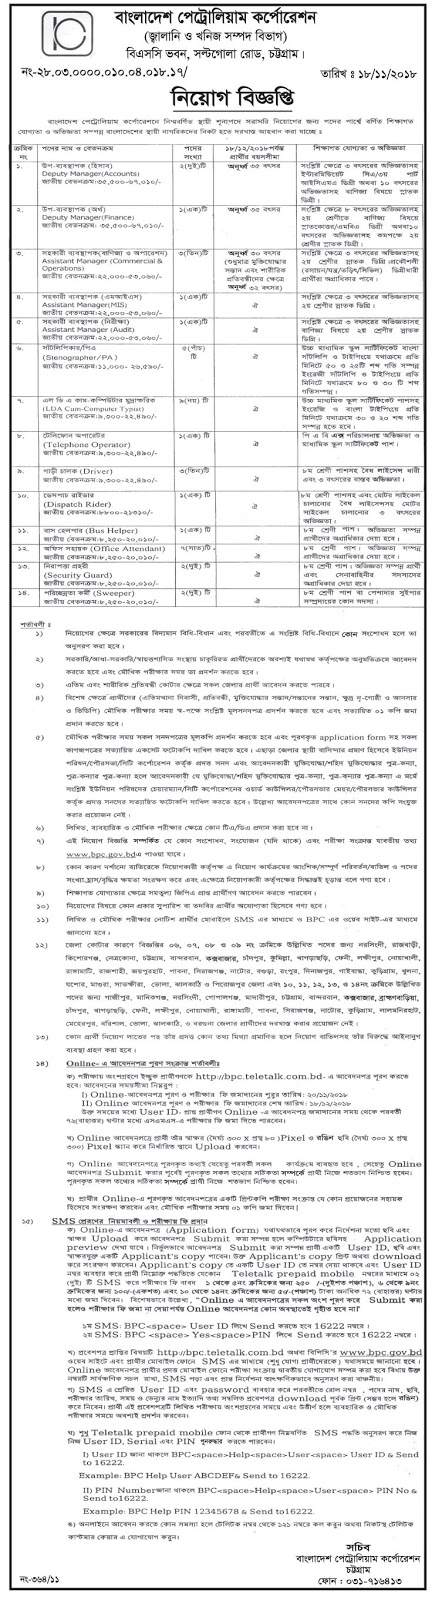 Bangladesh Petroleum Corporation (BPC) Job Circular 2018 